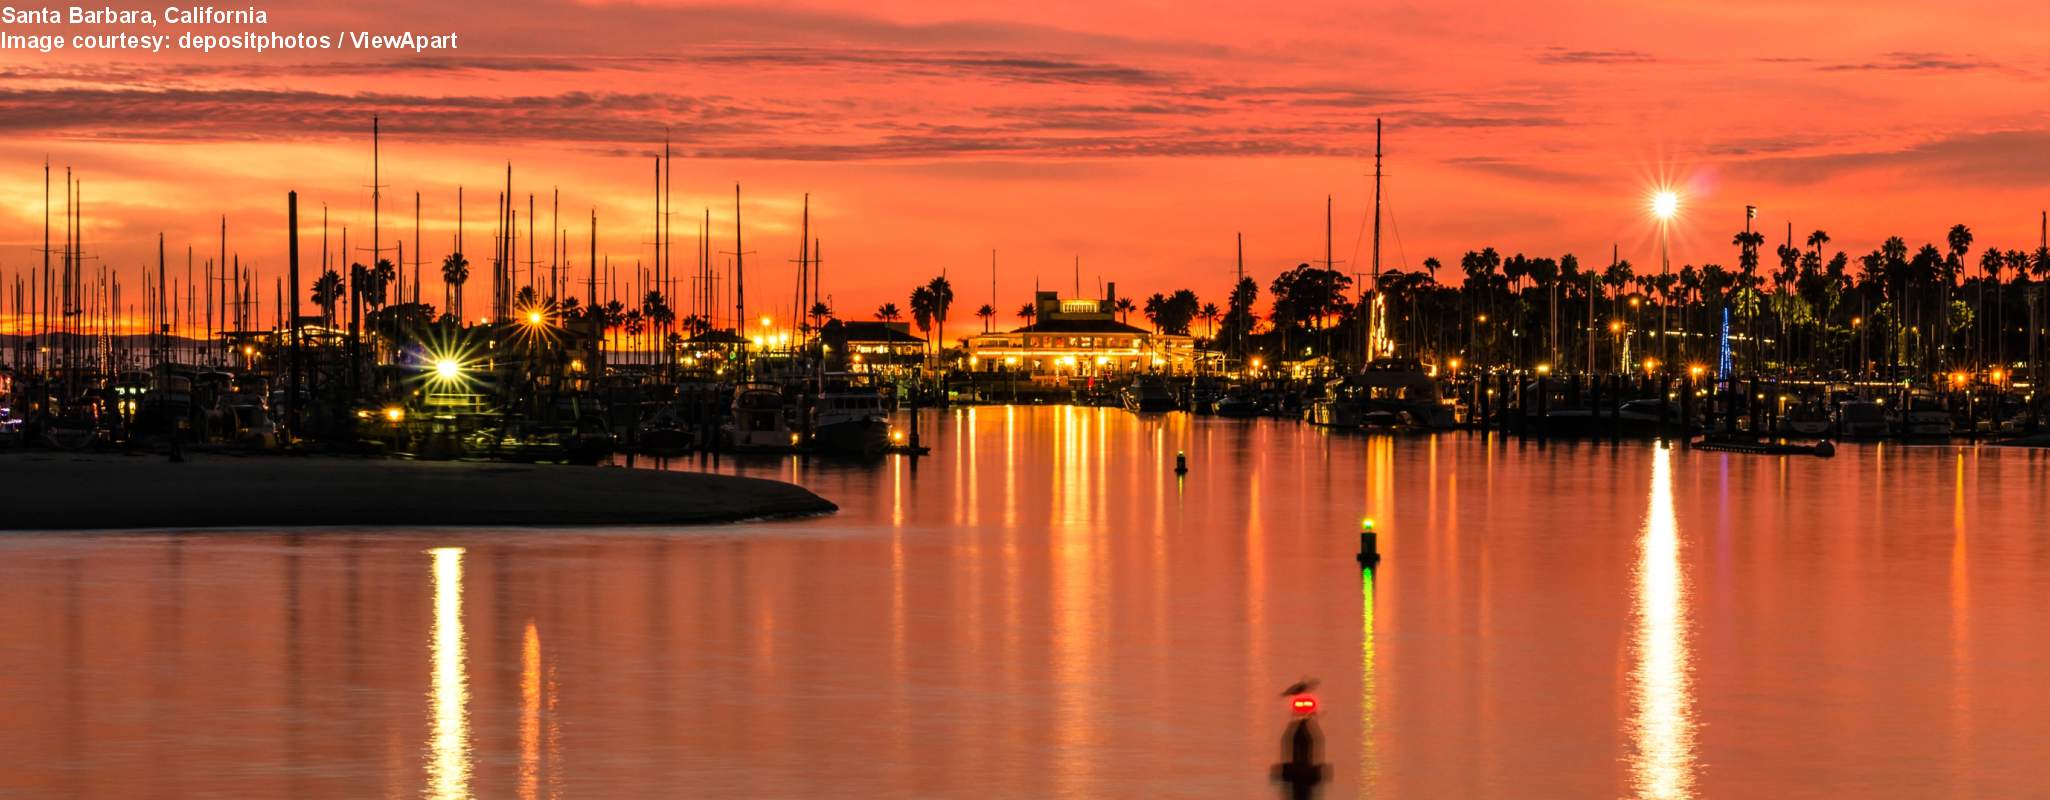 Santa Barbara image